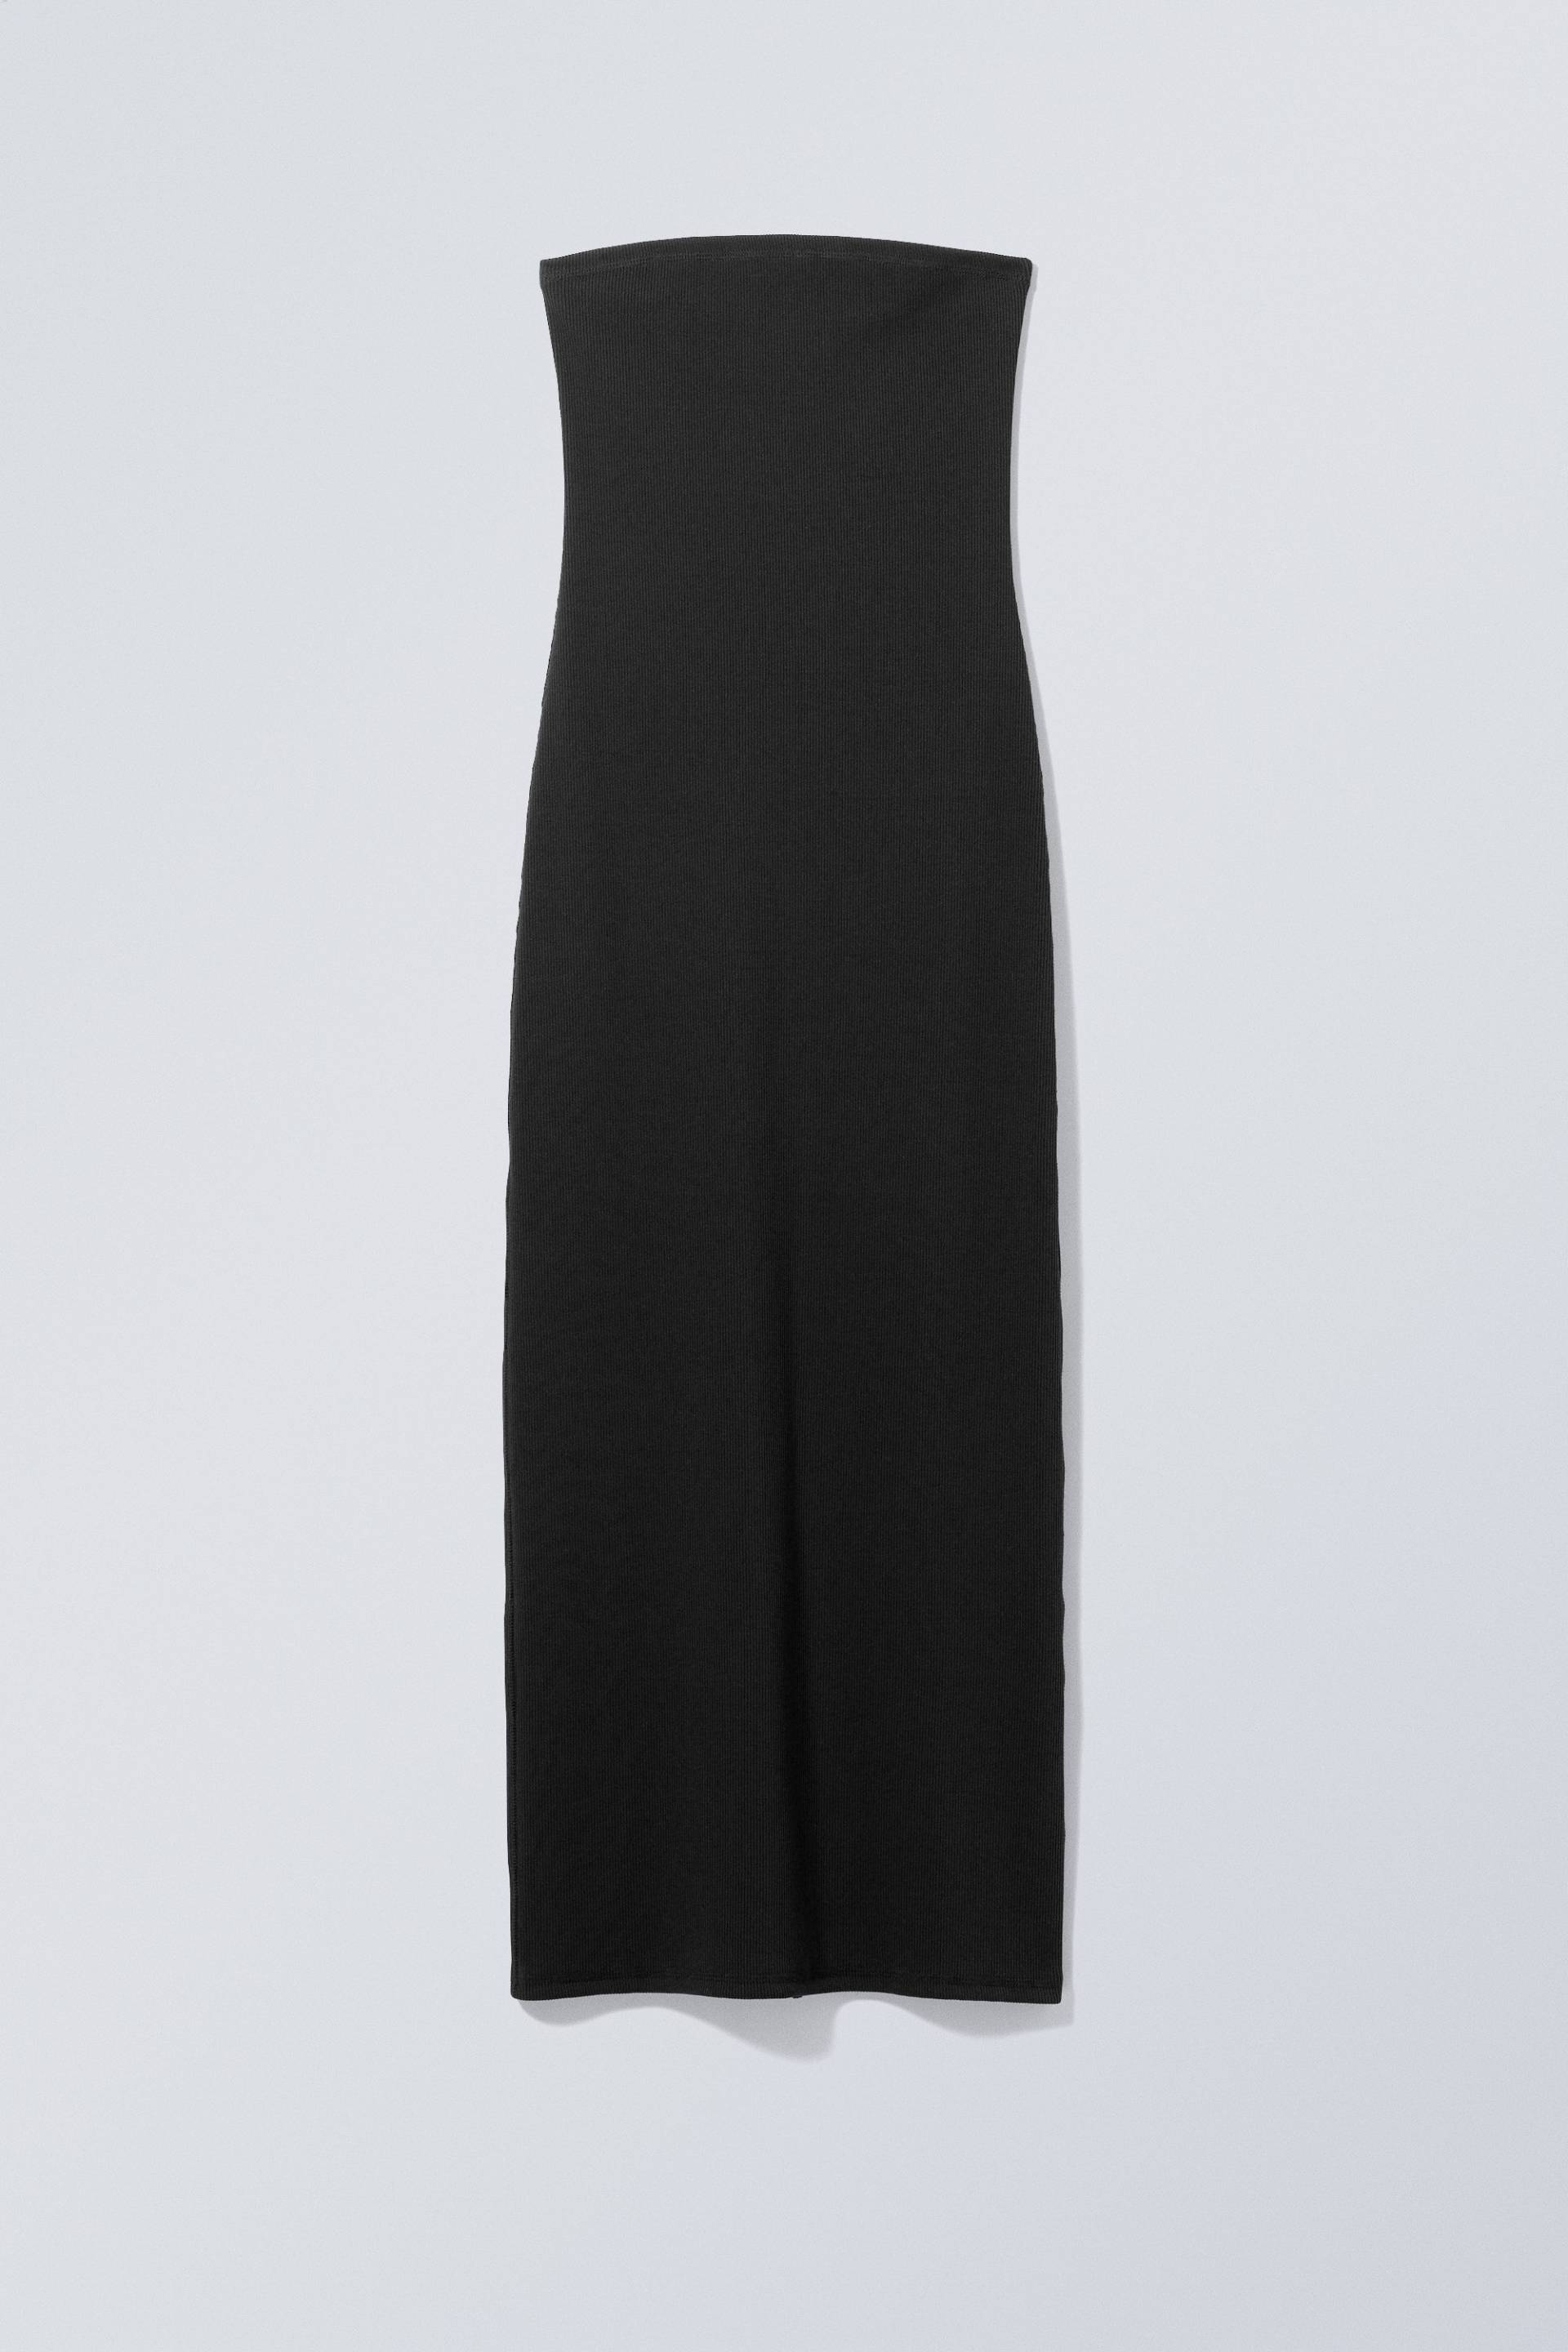 Weekday Geripptes Kleid Tania Schwarz, Alltagskleider in Größe L. Farbe: Black von Weekday